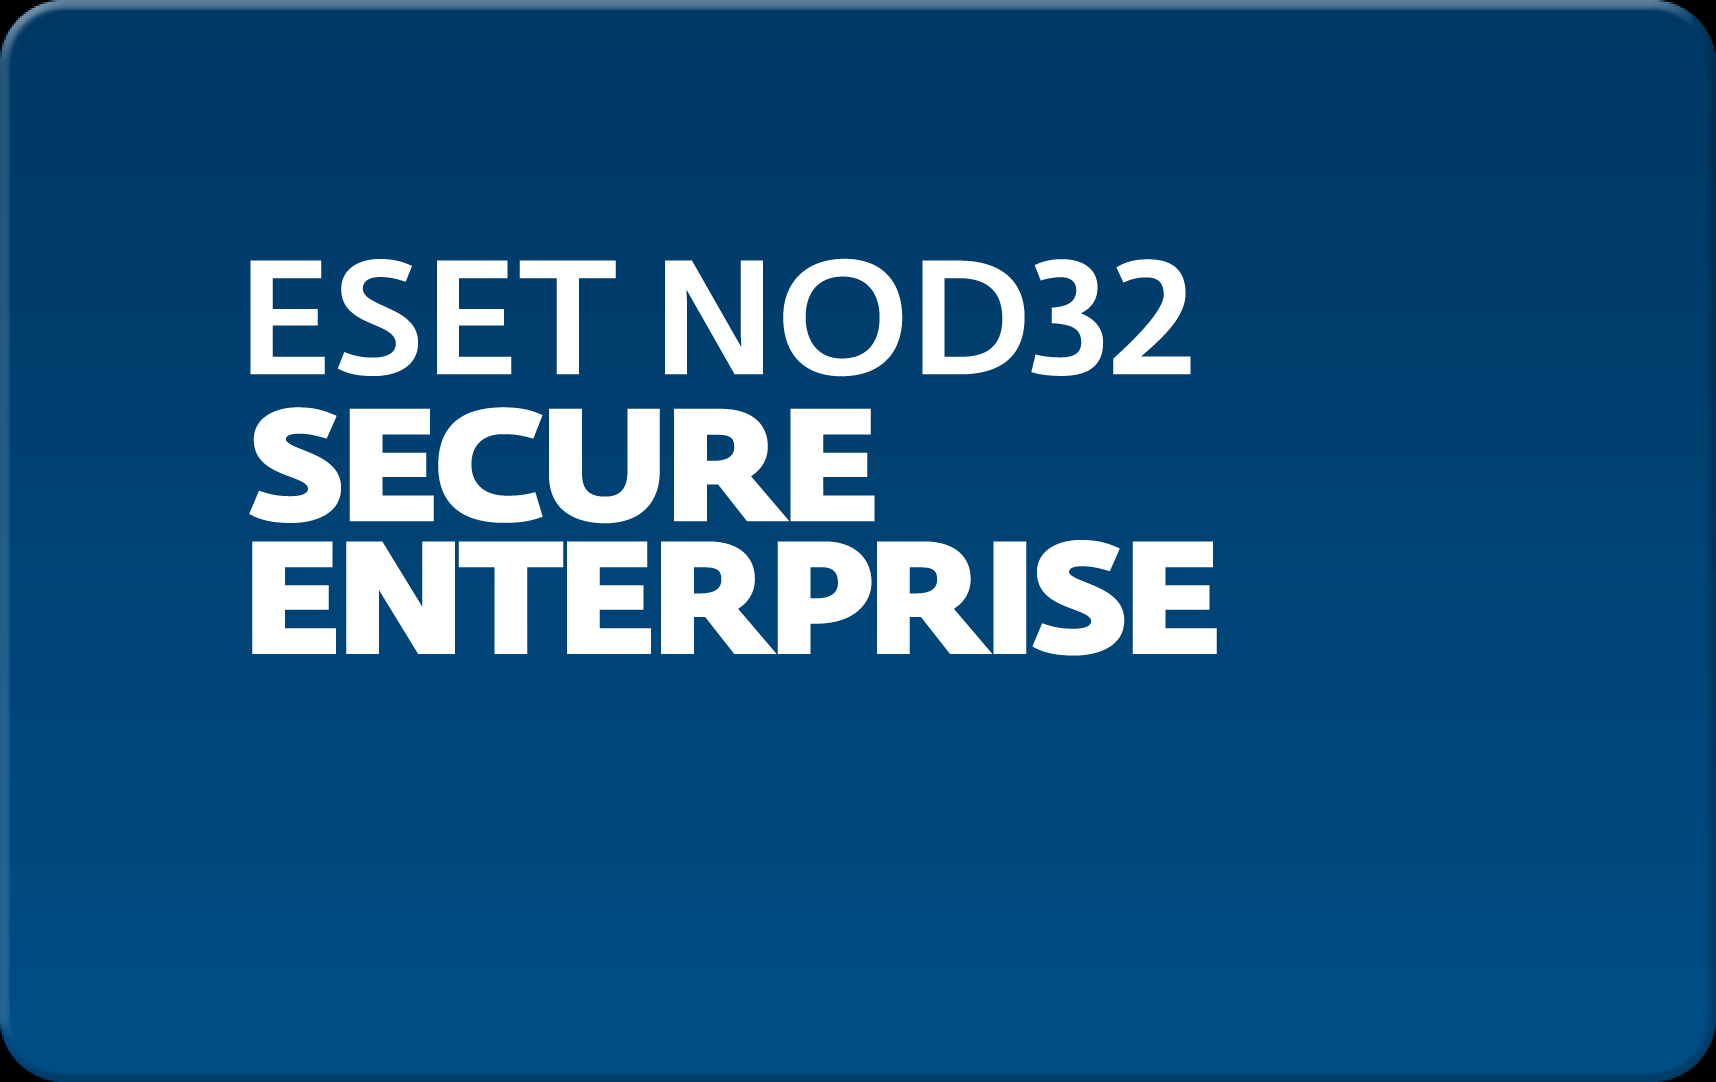        Eset NOD32 Secure Enterprise  153  NOD32-ESE-NS-1-153  #1